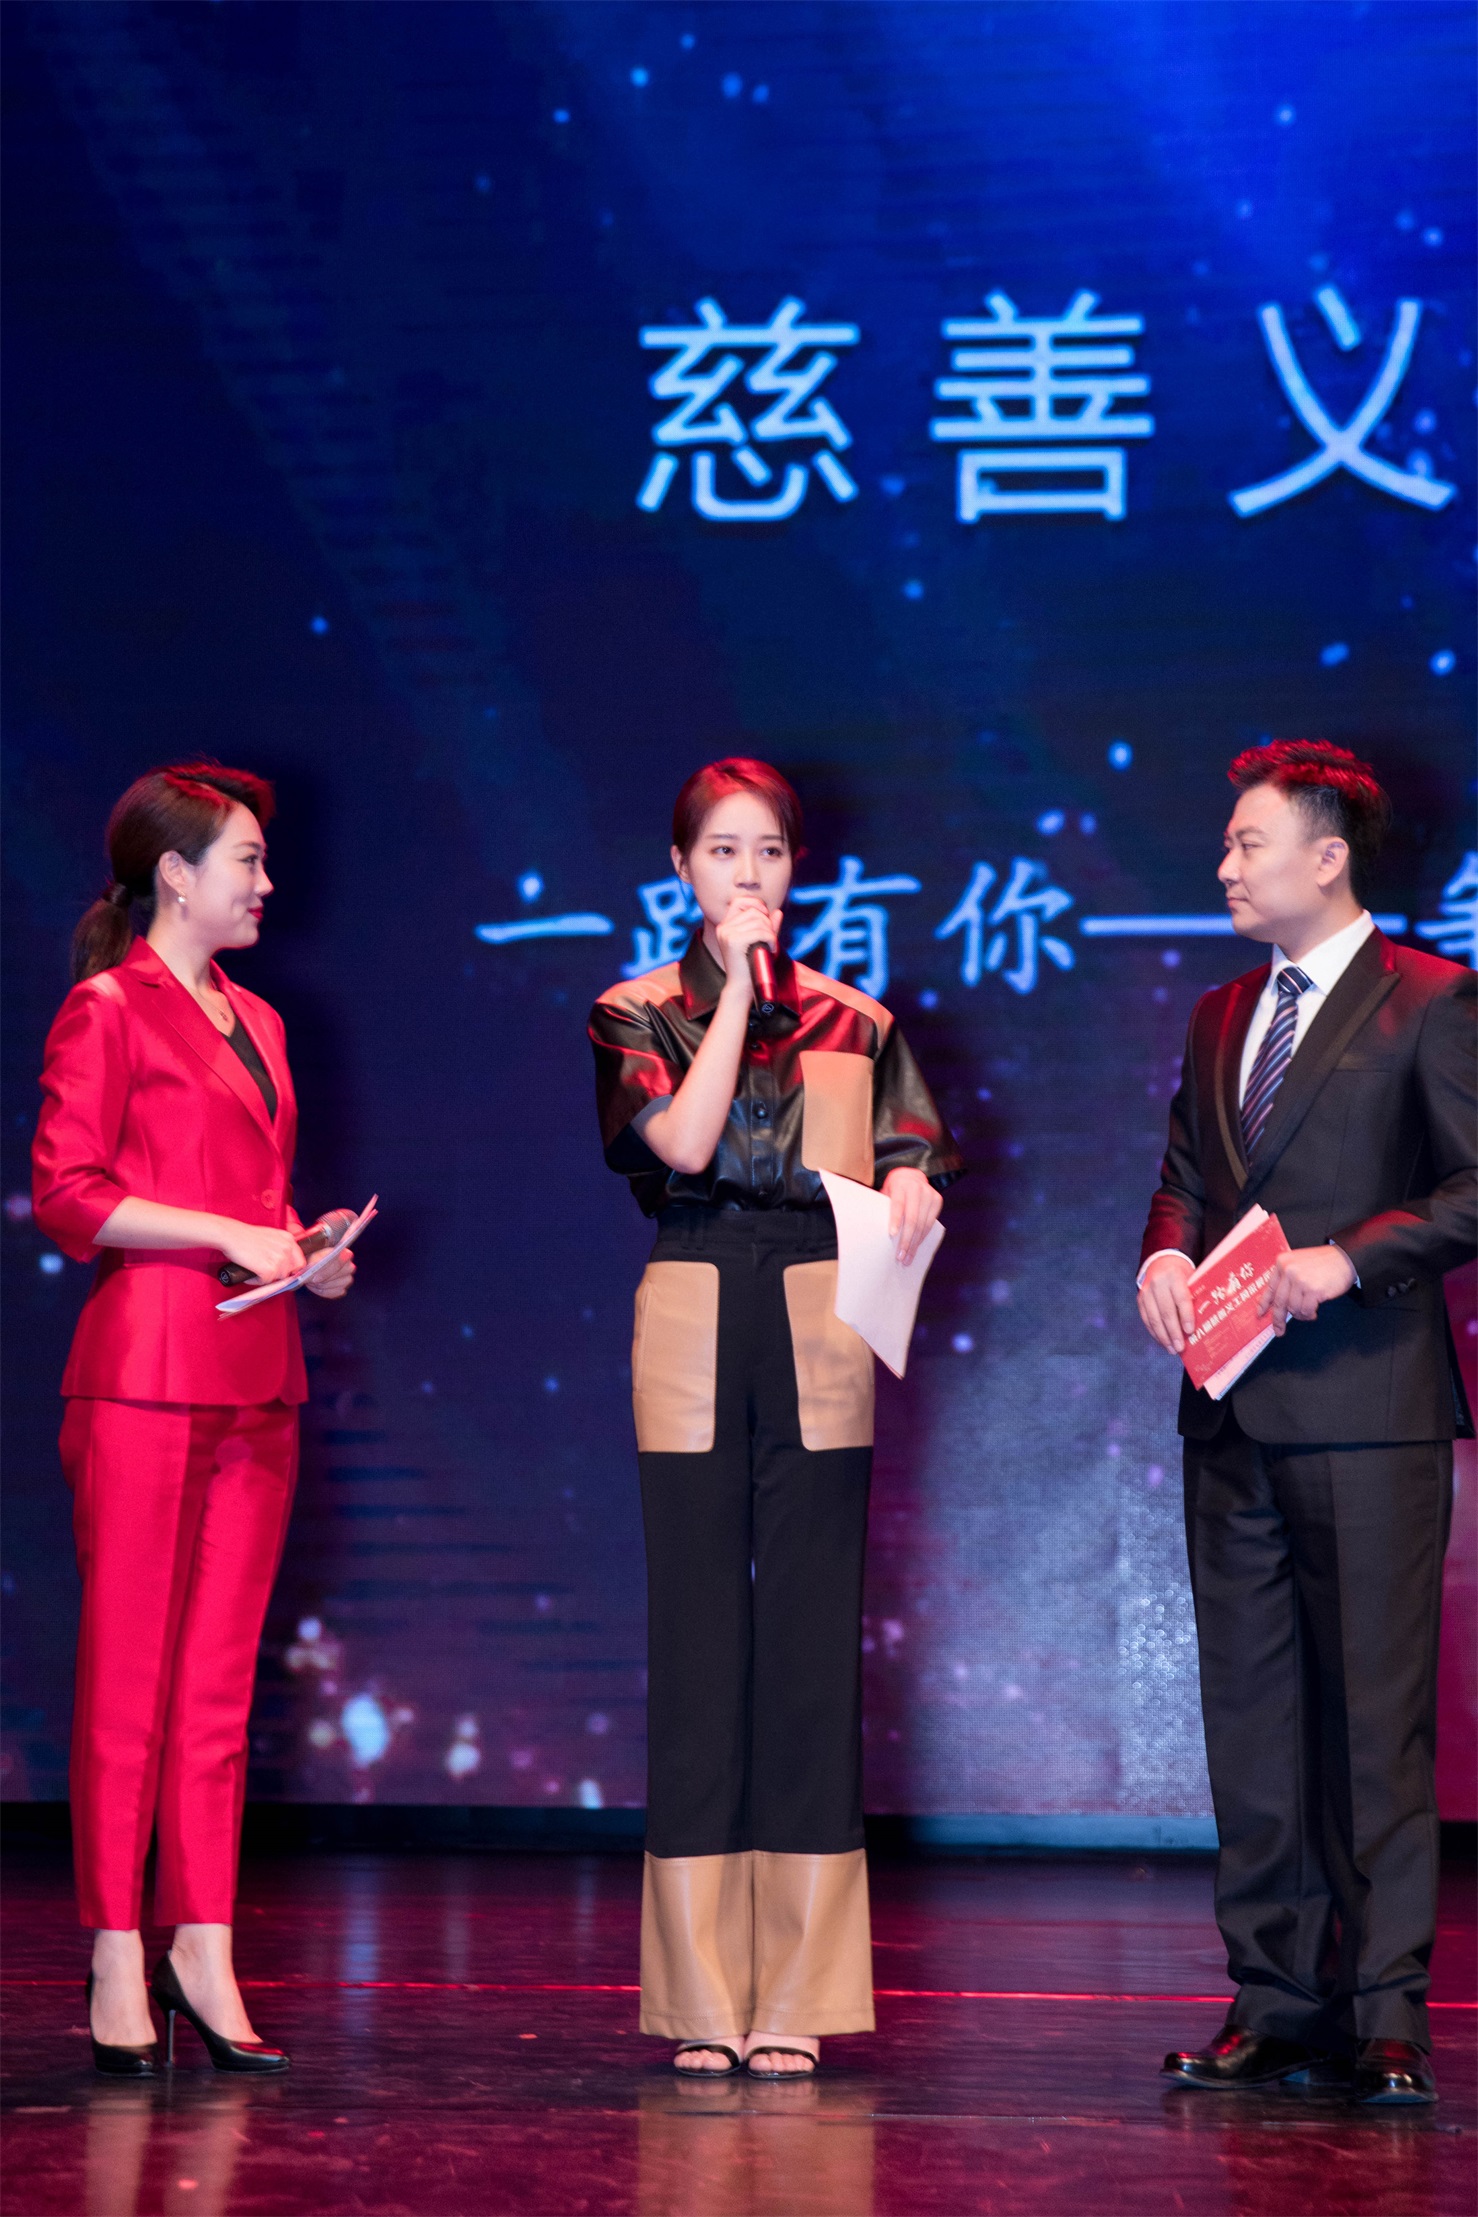 藍盈瑩現身北京慈善義工年度盛典踐行公益點亮美好